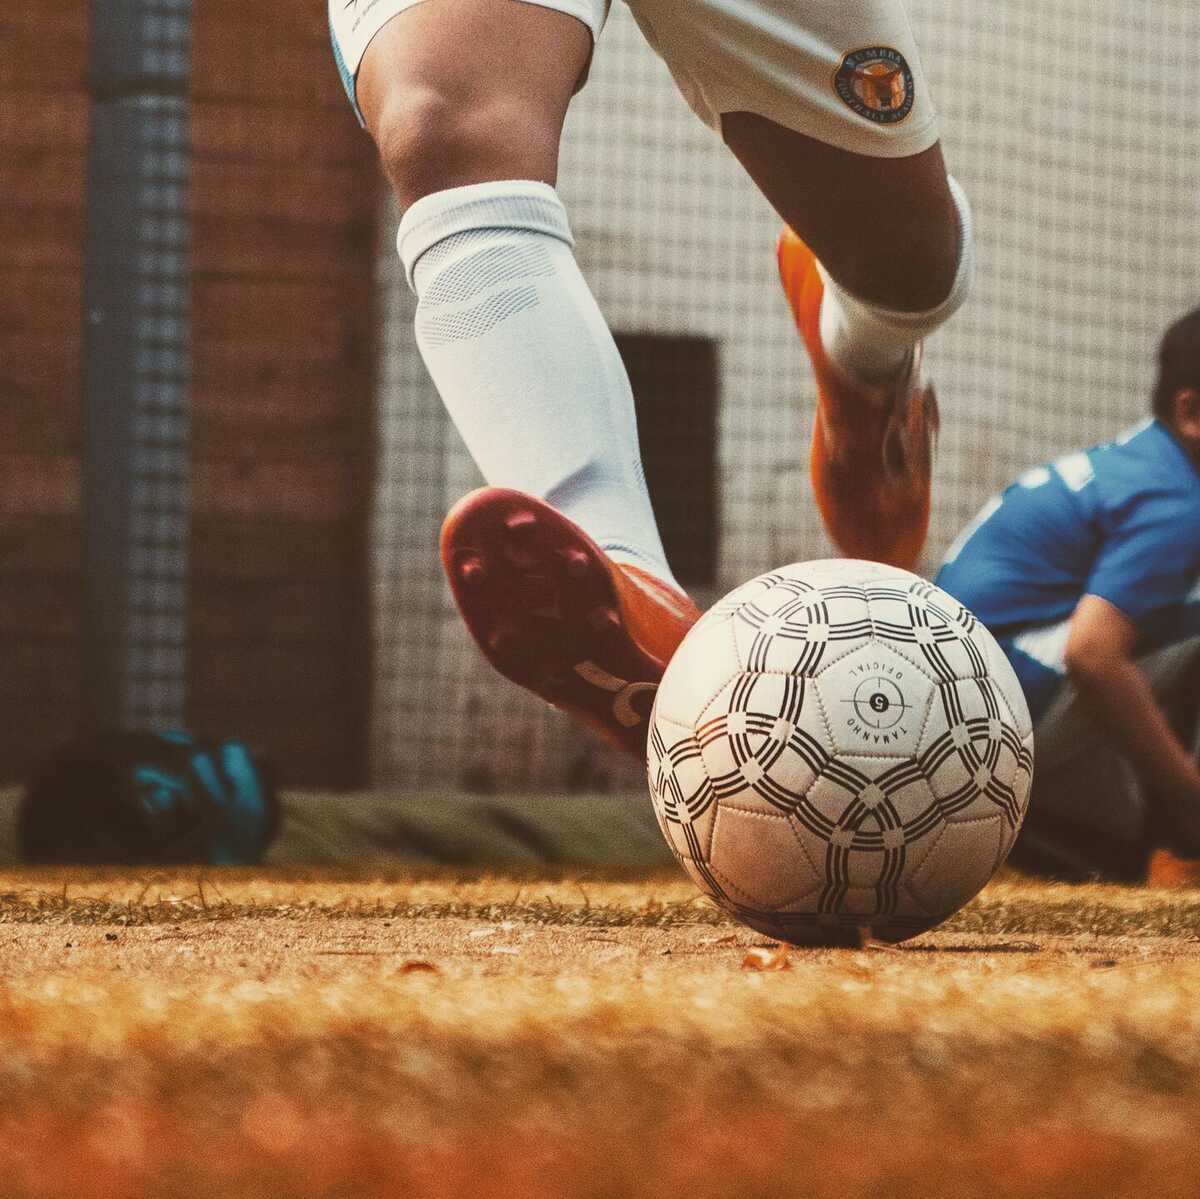 Foto Gol de futebol branco em foco photo – Imagem de Futebol grátis no  Unsplash